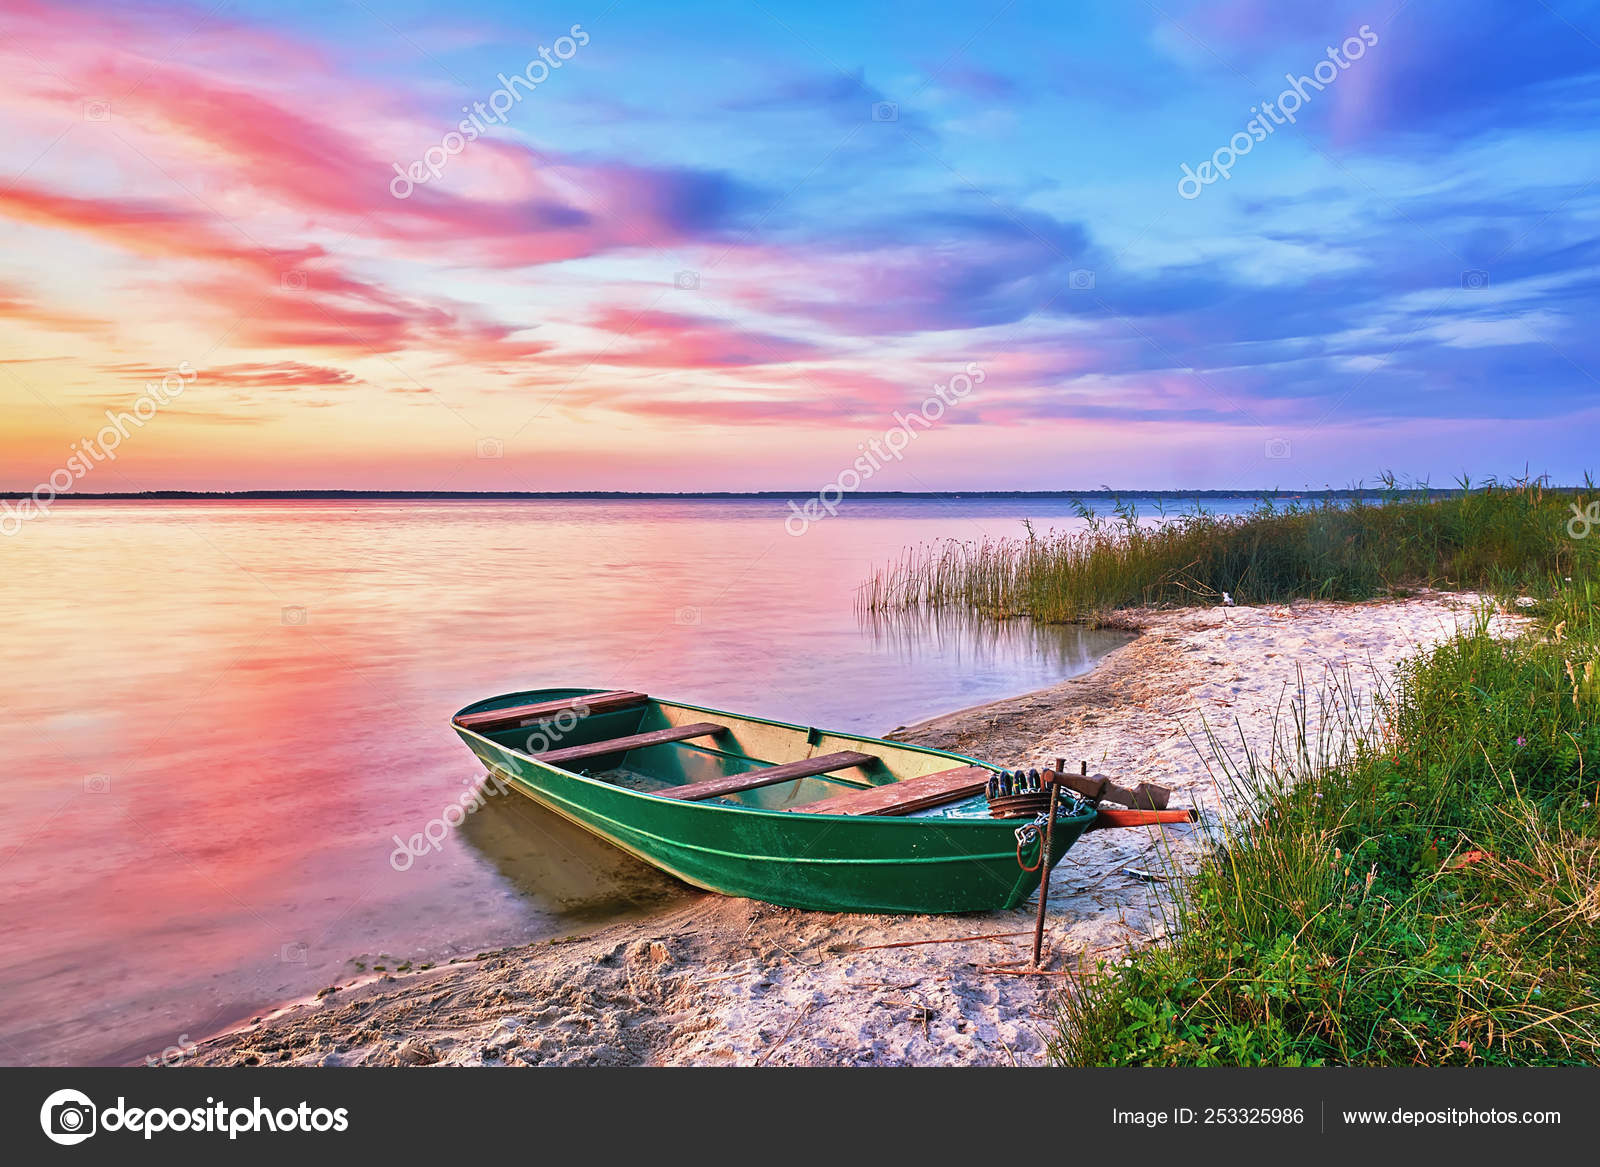 lake fishing boat